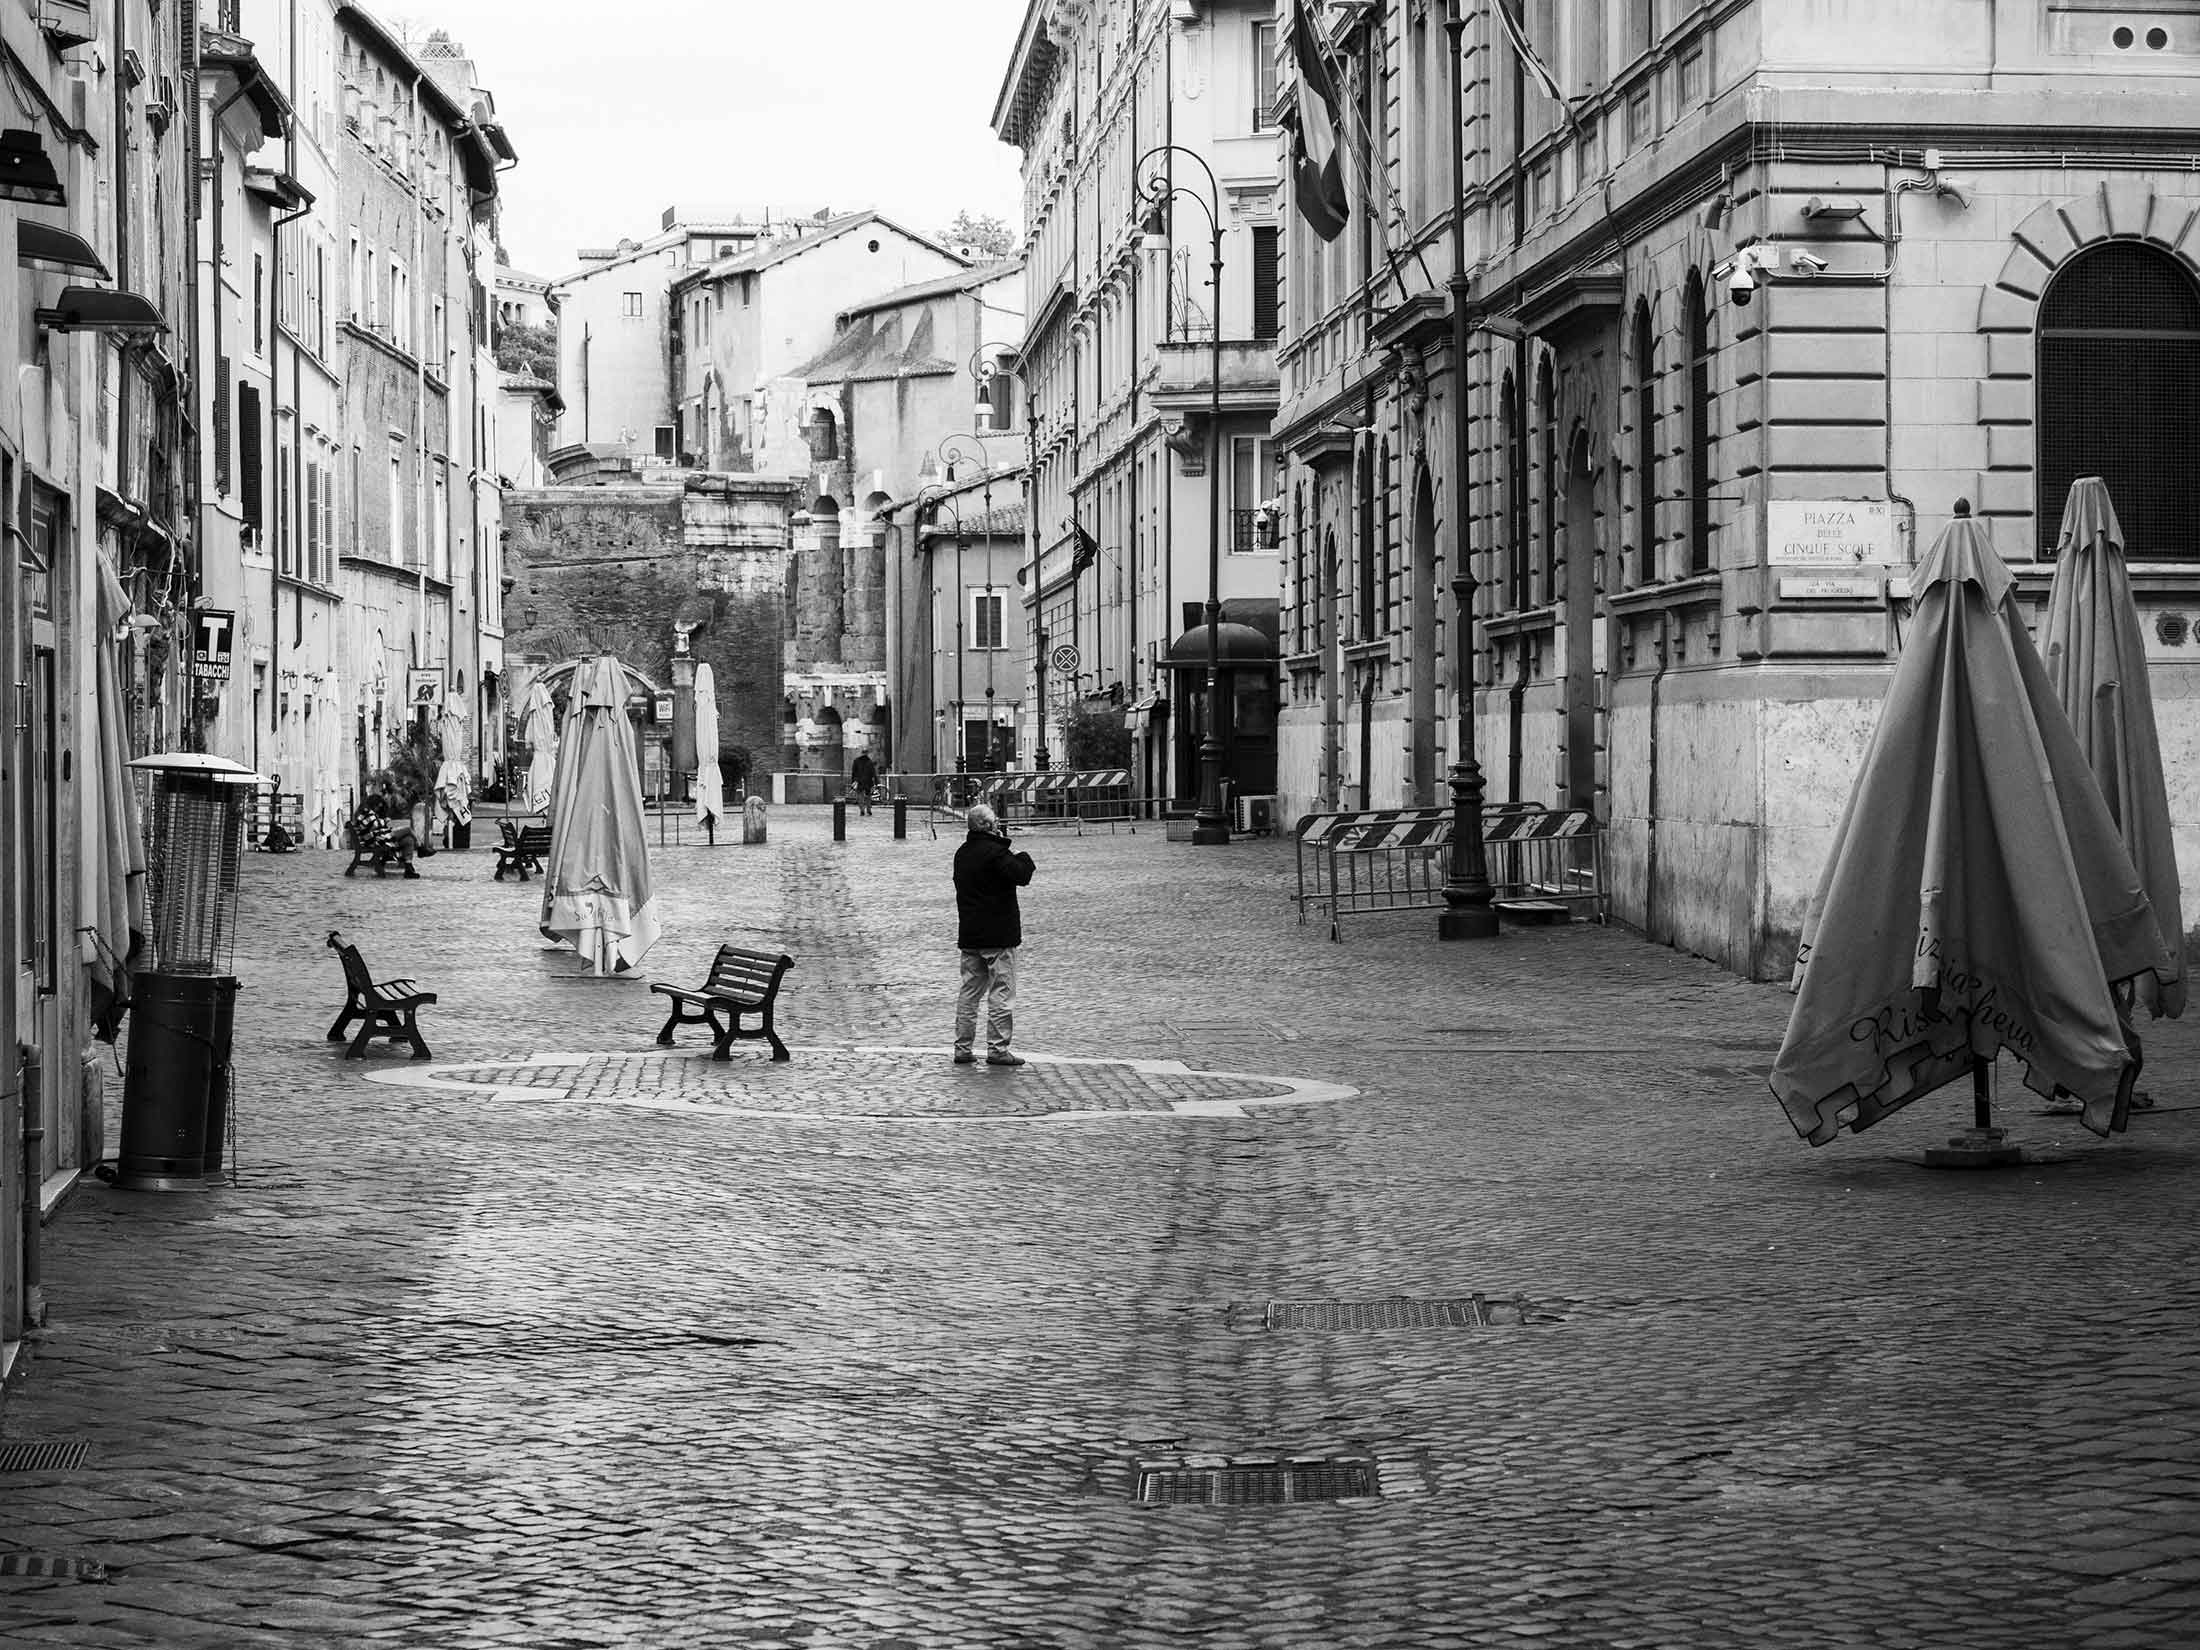 Jewish ghetto area of Rome, March 12.